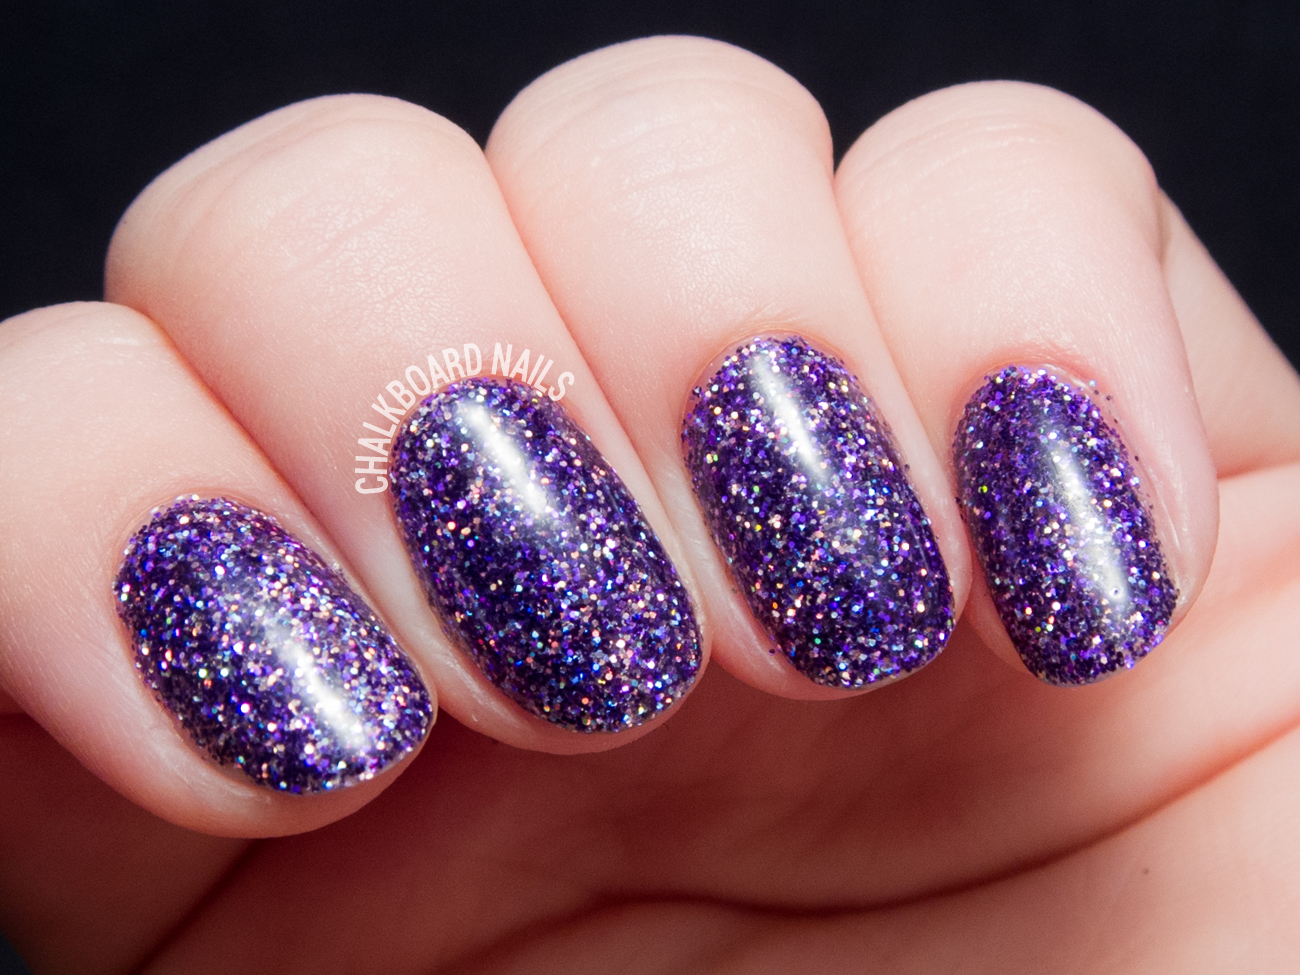 Purple Rockstar Gel Nails by @chalkboardnails